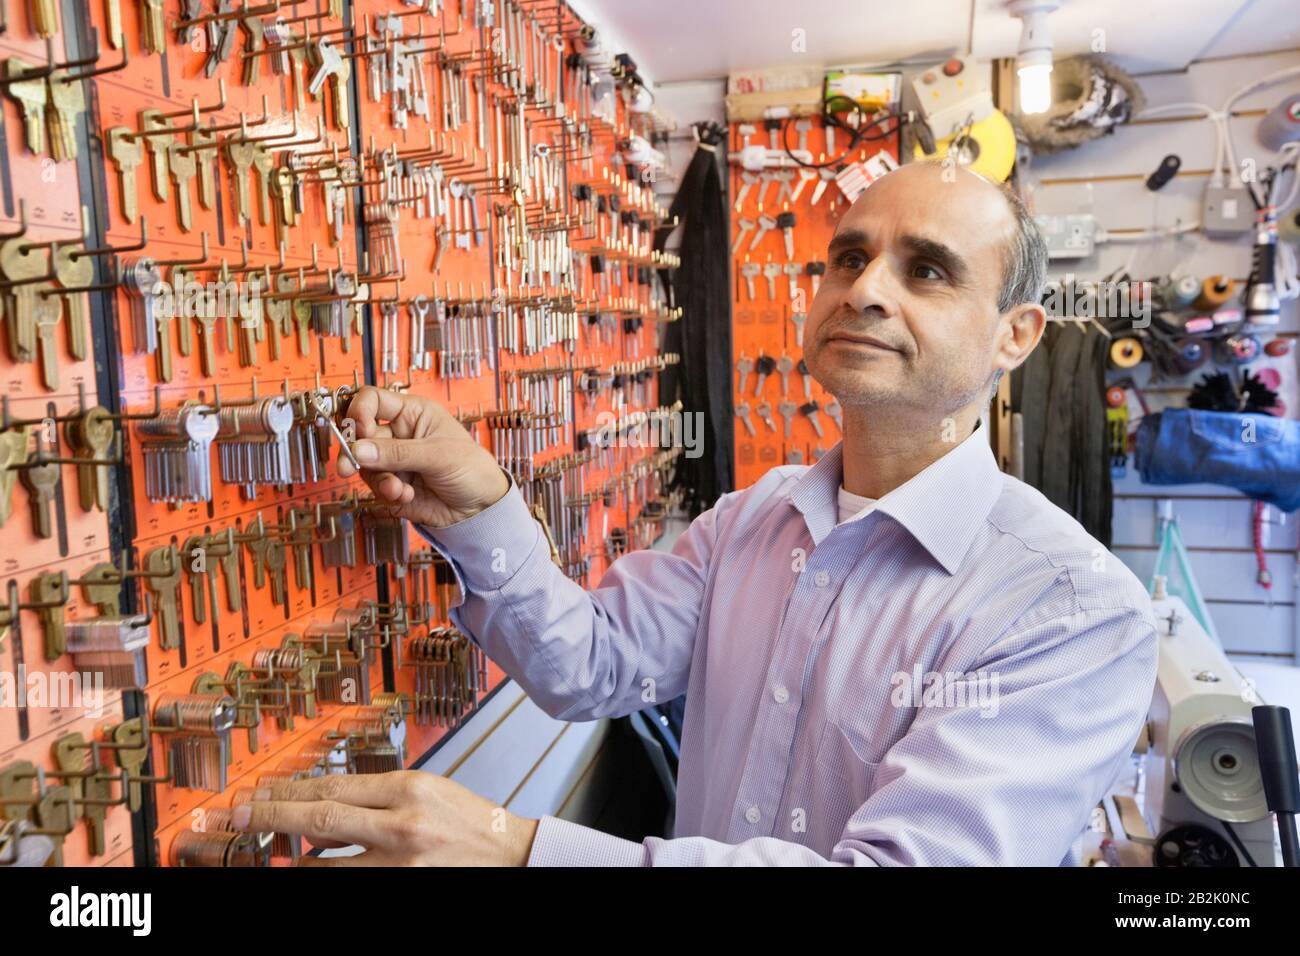 Serrurier mâle senior travaillant dans un magasin de clés Banque D'Images